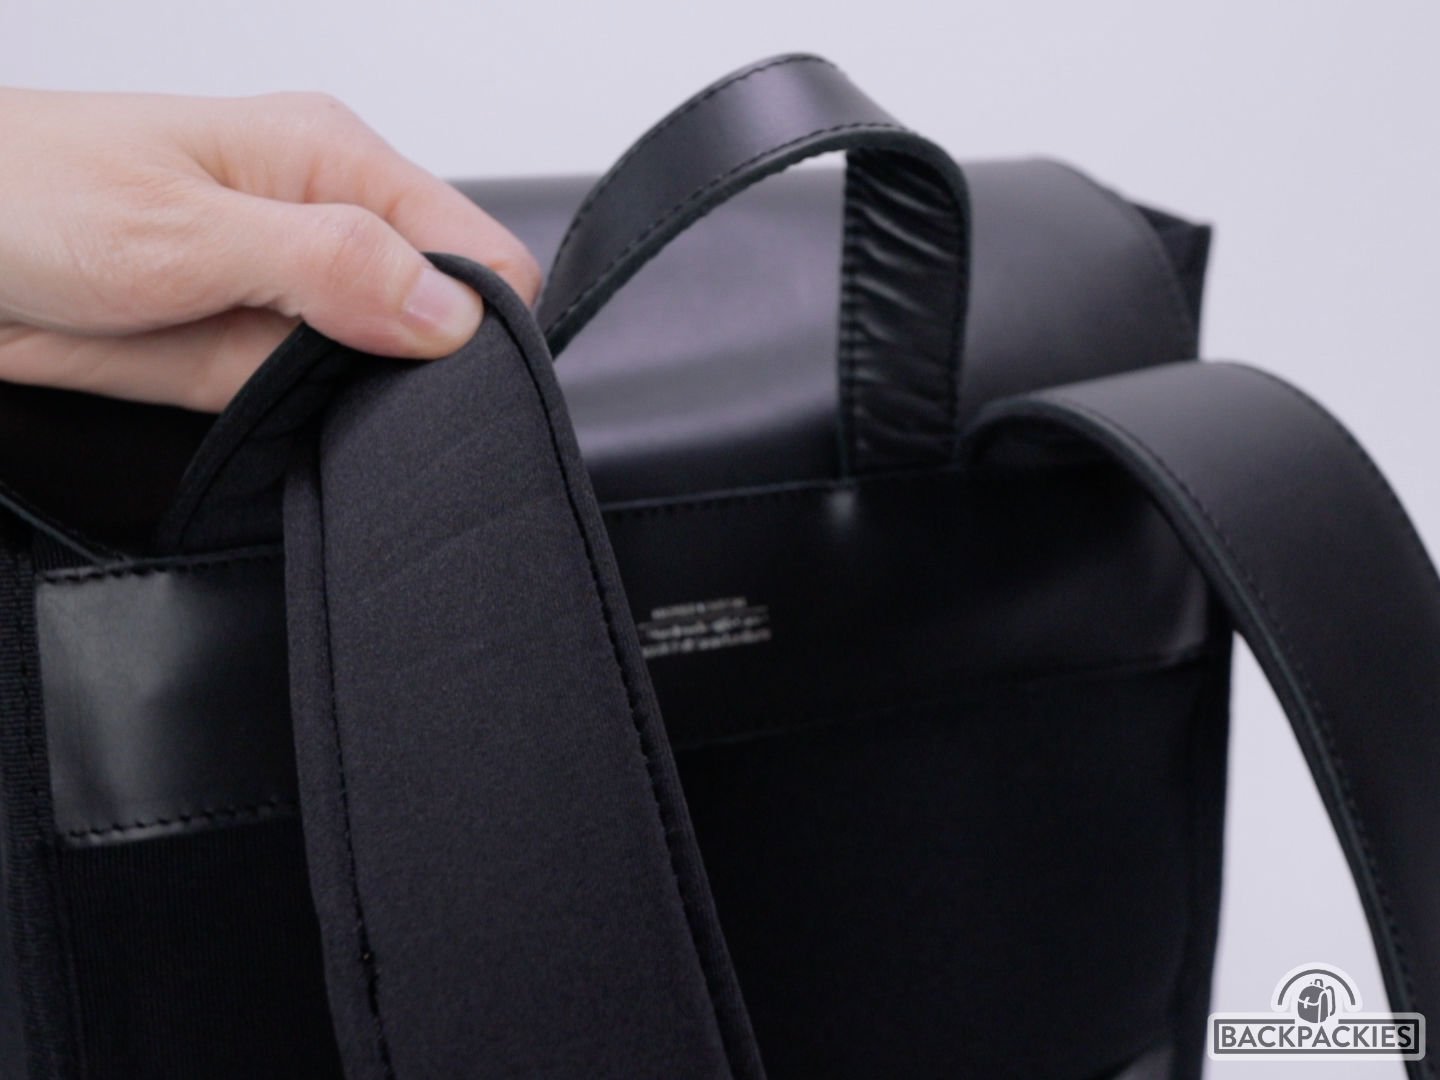 Harber London Commuter backpack review - shoulder straps